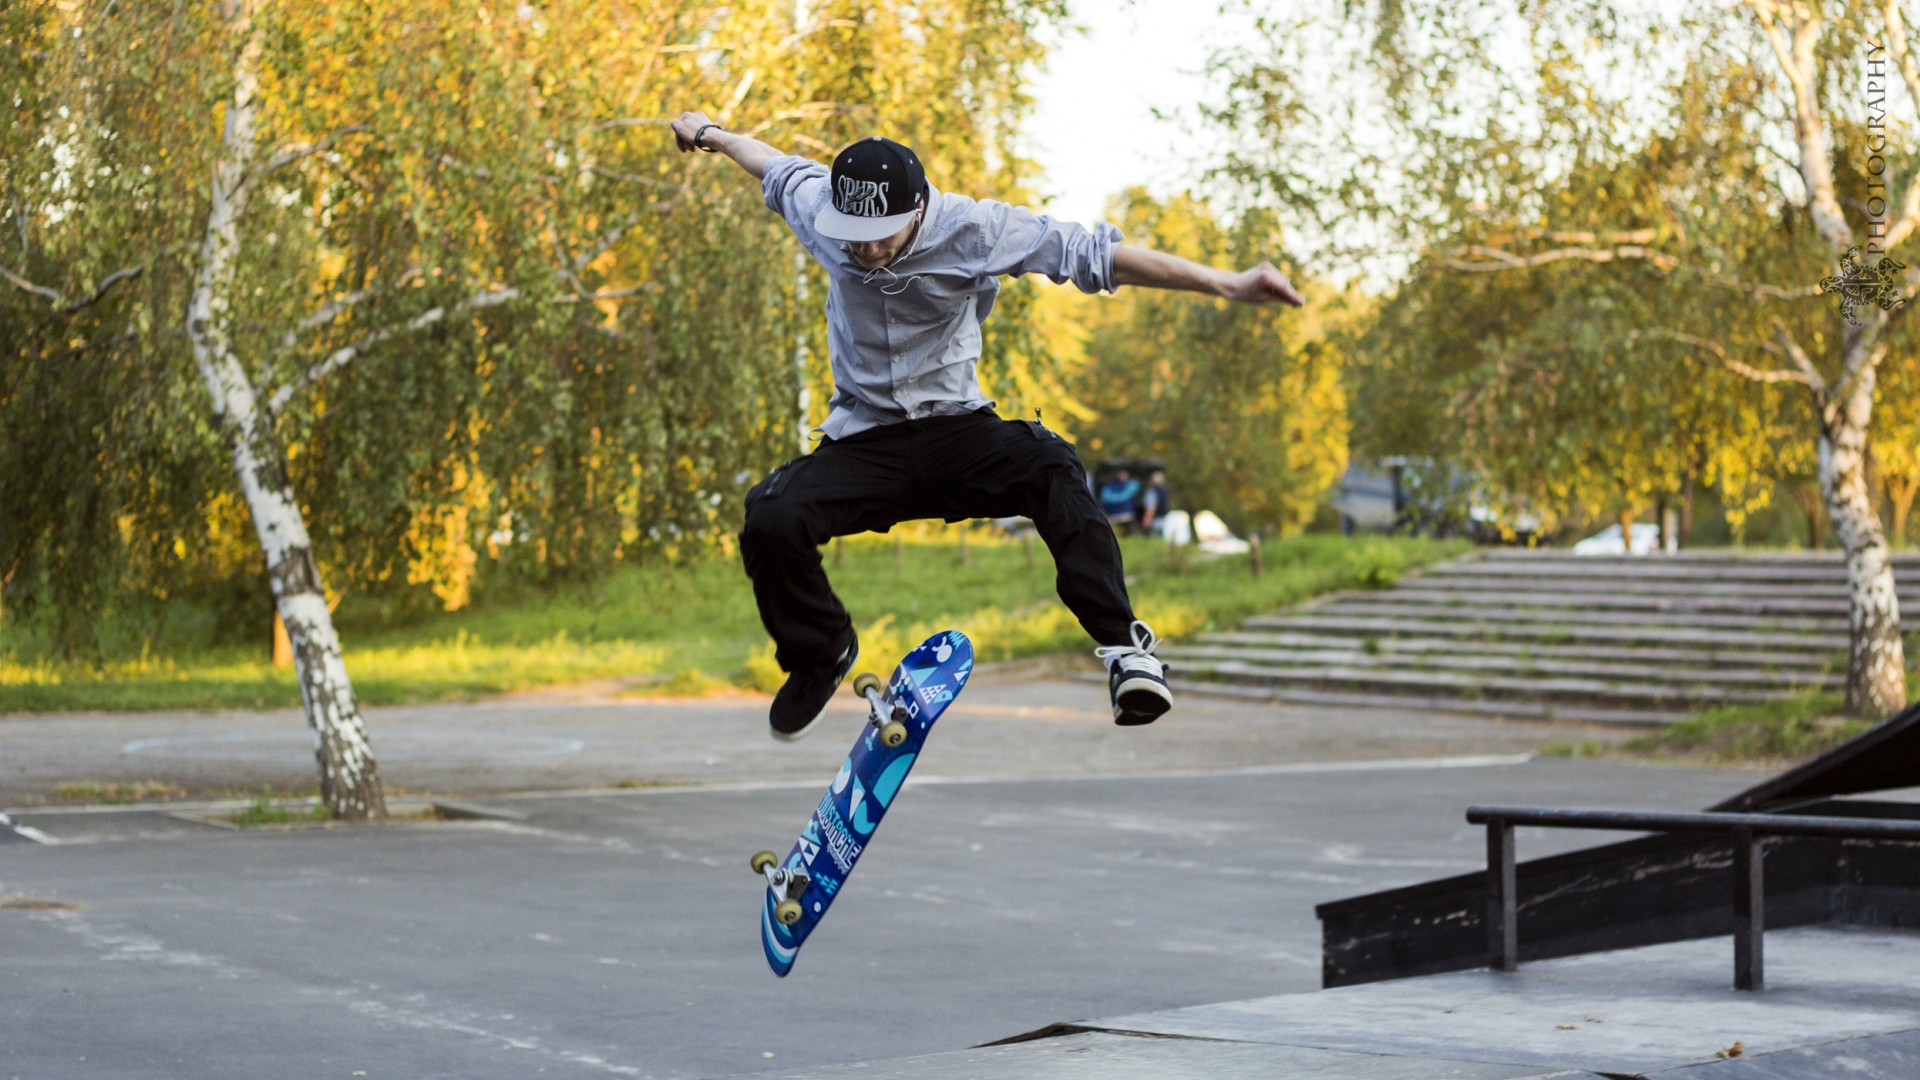 Jumping On A Blue Skateboard Wallpaper55 Best Wallpaper